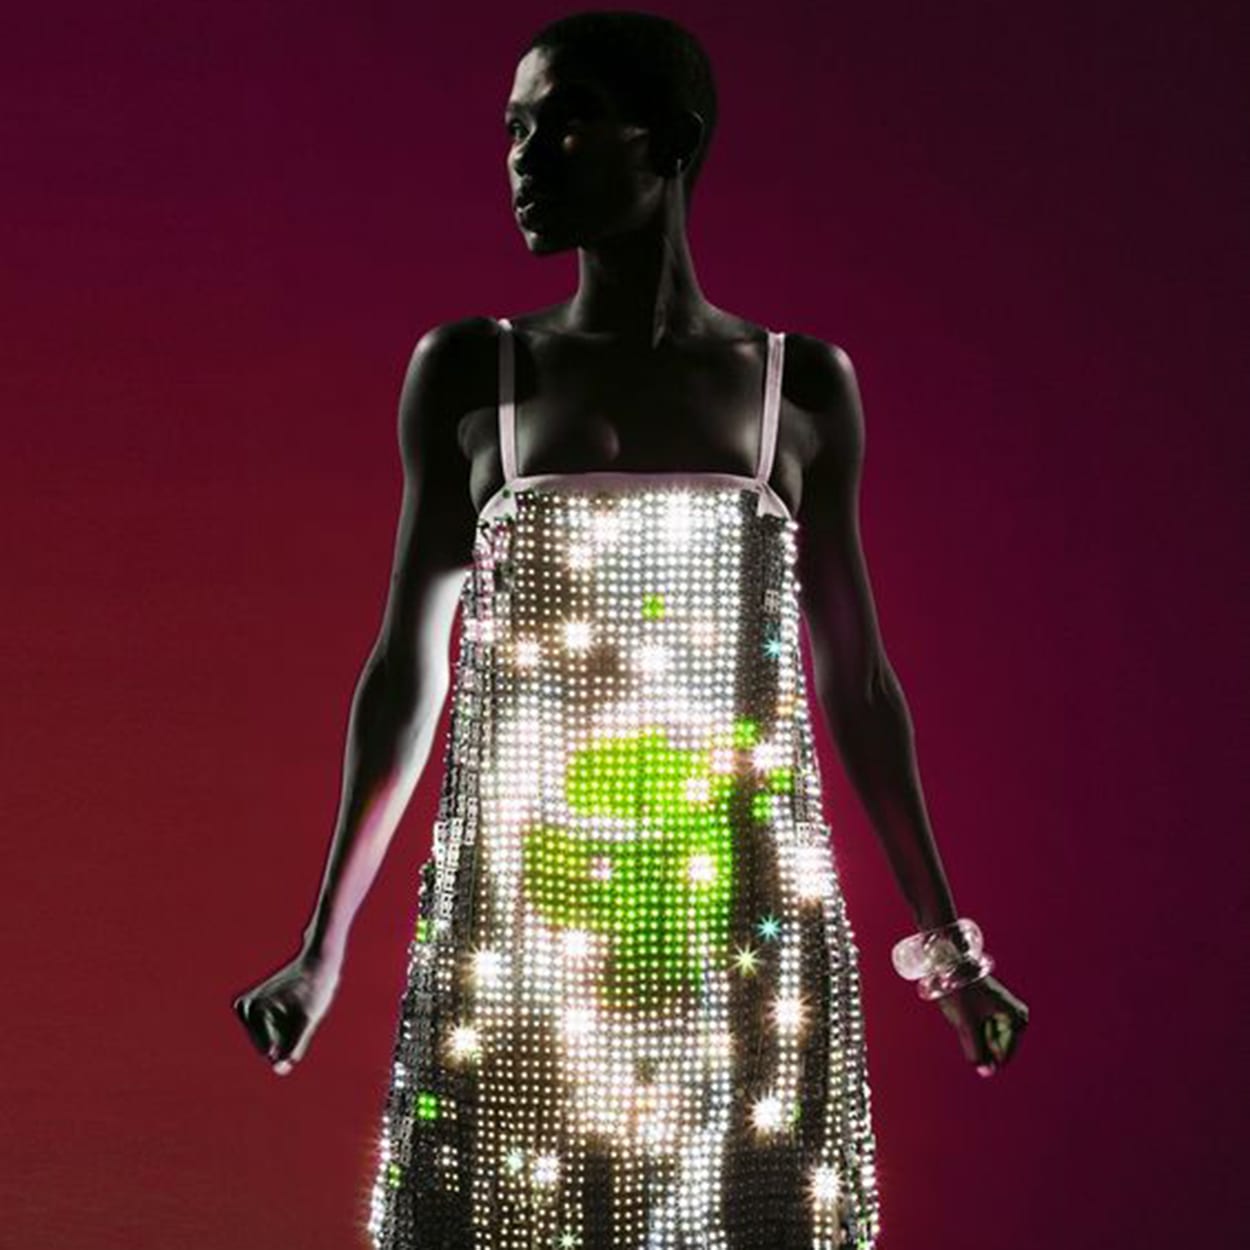 Moda digital: como a tecnologia se torna aliada no mundo fashion?